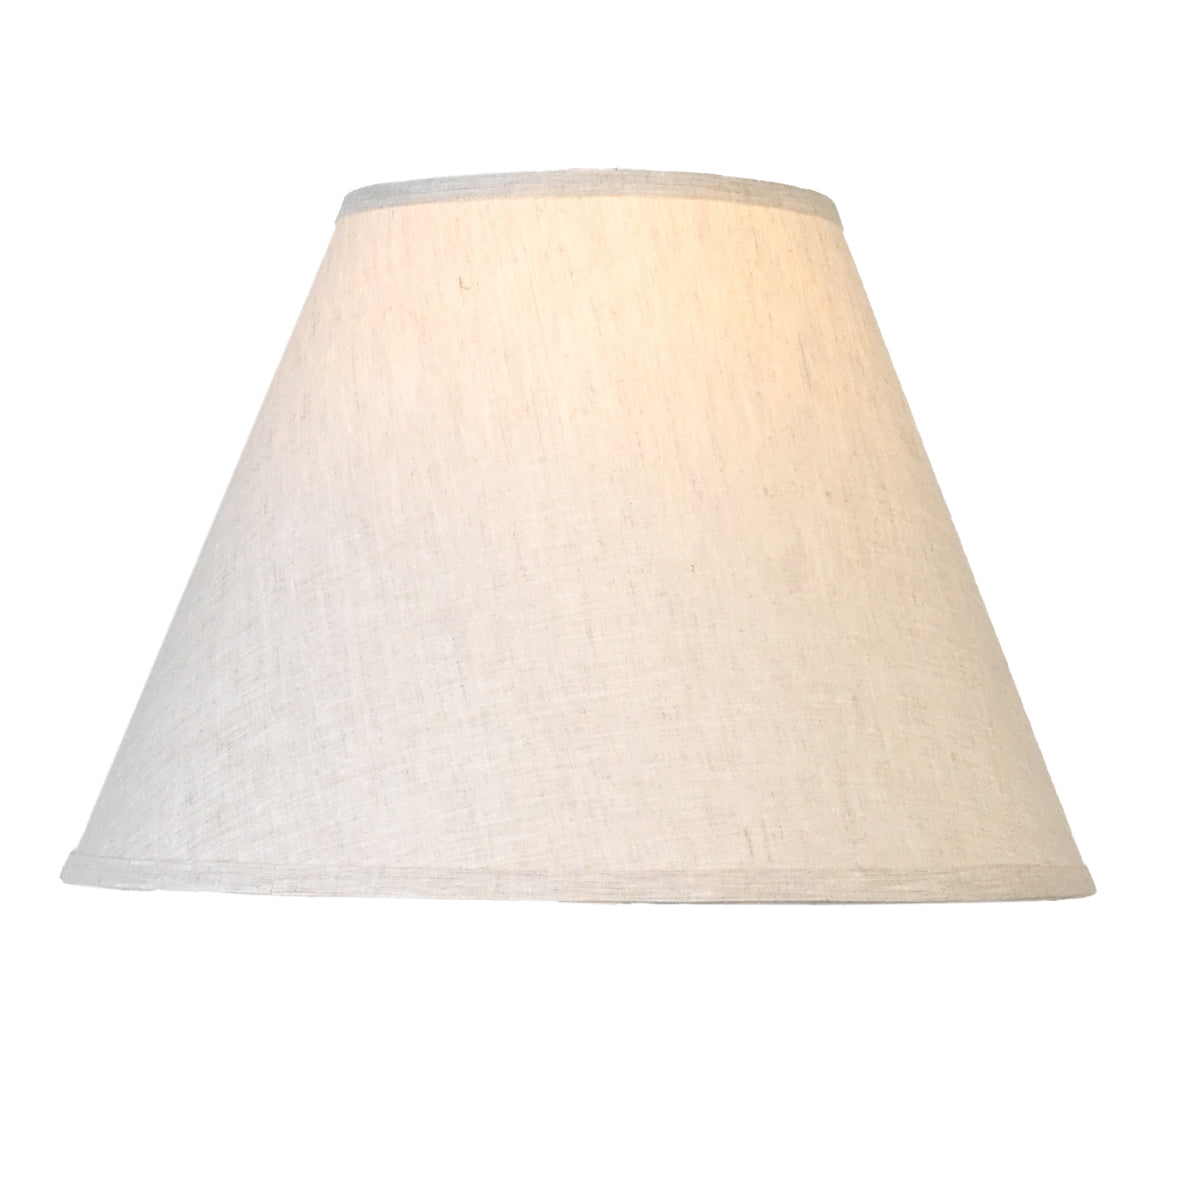 Shade: Empire 15" khaki linen lamp shade